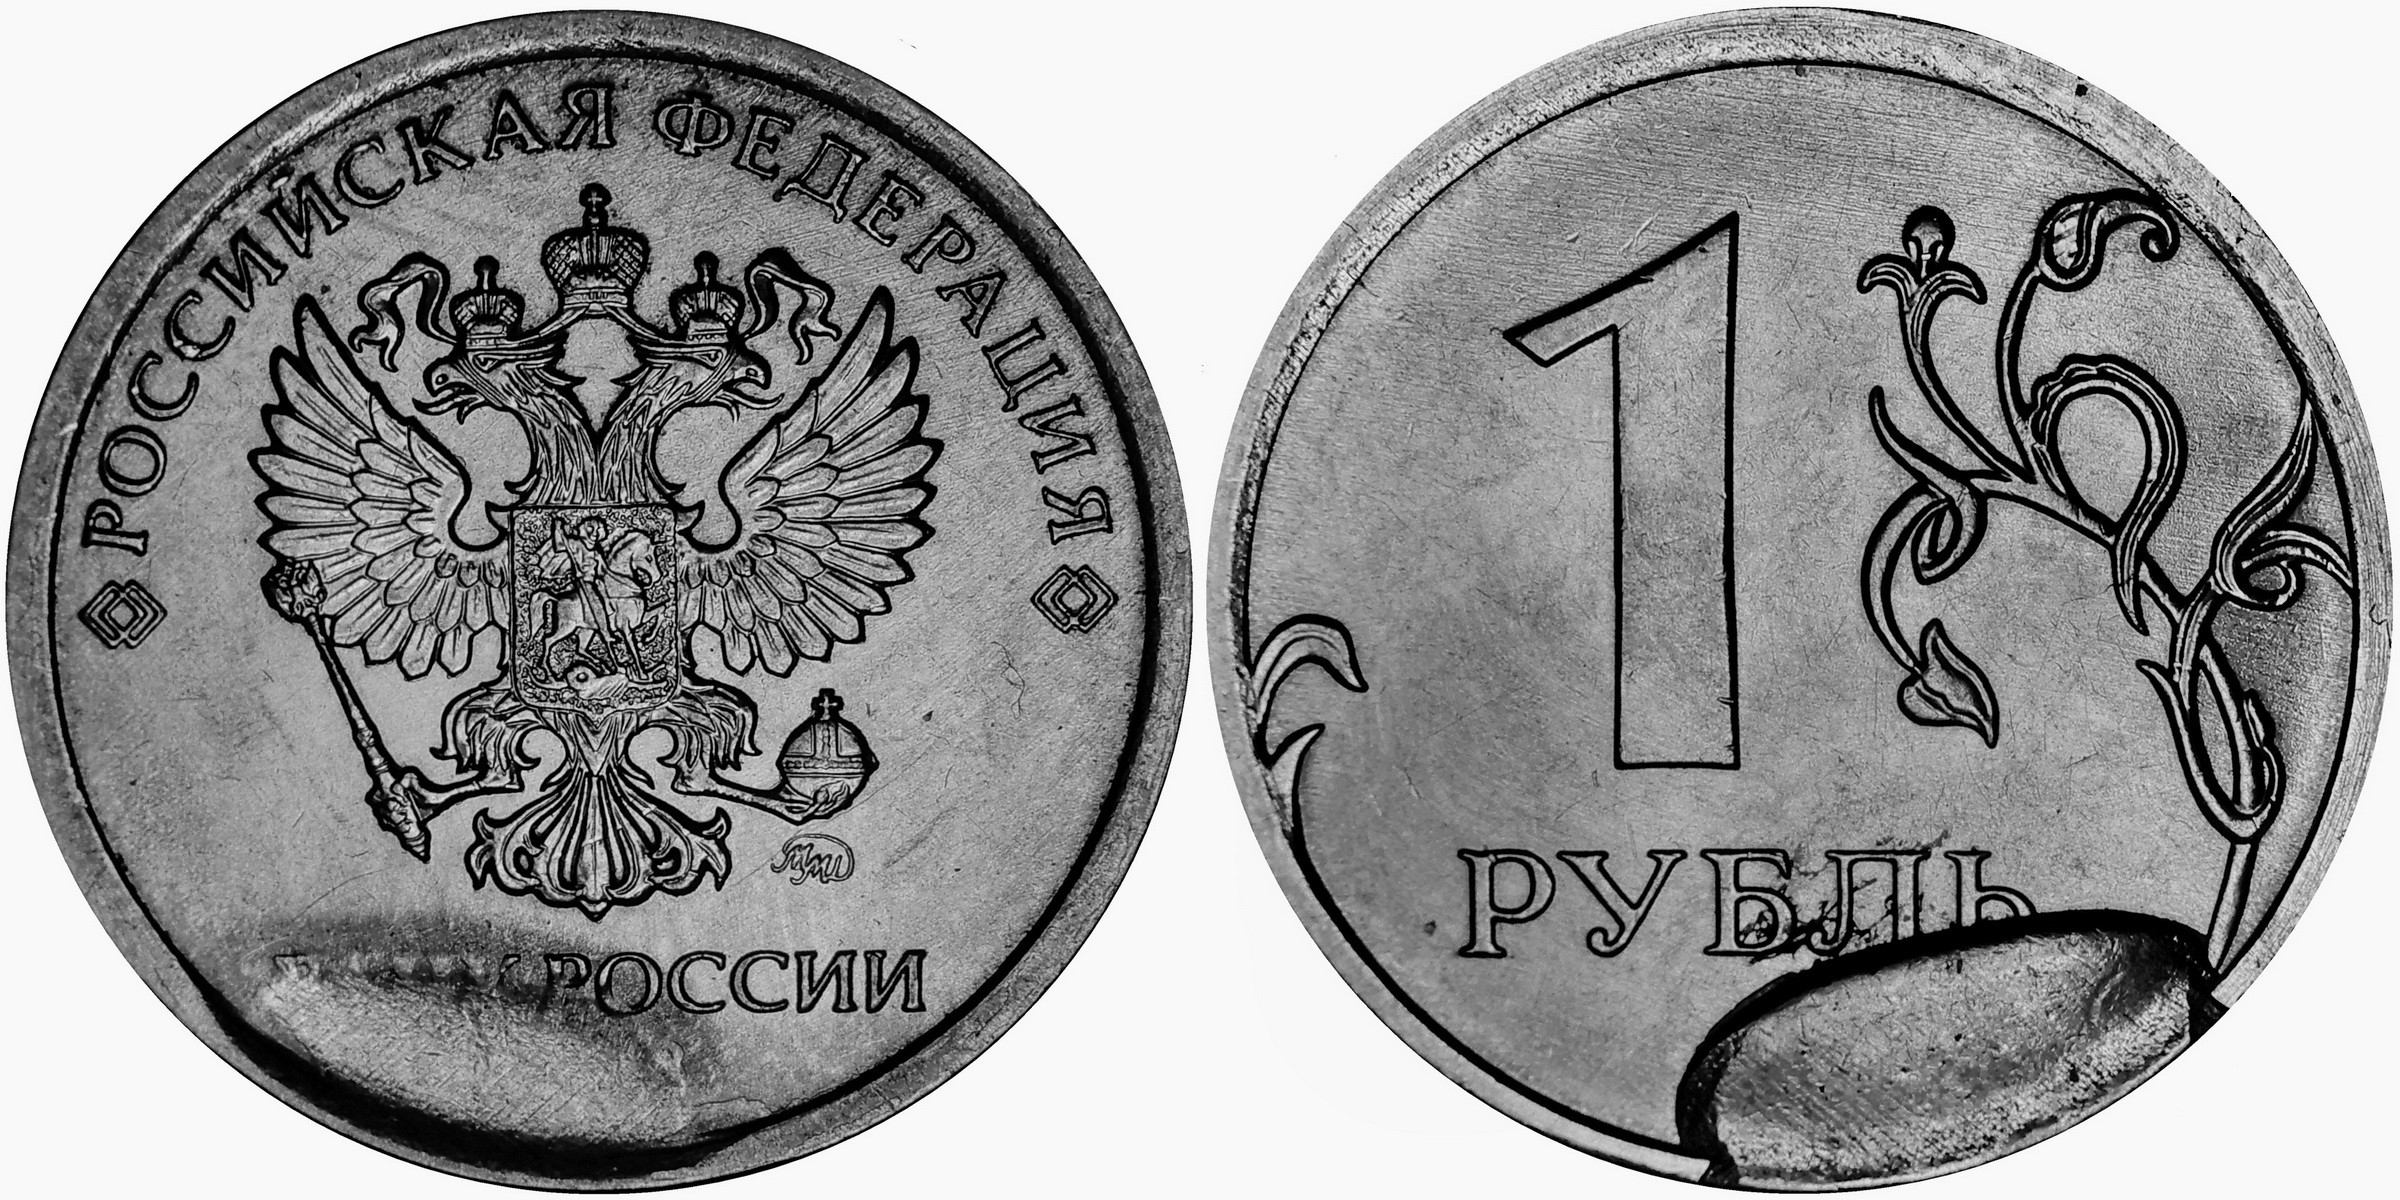 Живем на 1 рубль. Монета 1 рубль реверс и Аверс. 1 Рубль 2020 брак раскол штемпеля. 1 Рубль 2020 года брак раскол. Монета брак 1 рубль 2020 раскол штемпеля.